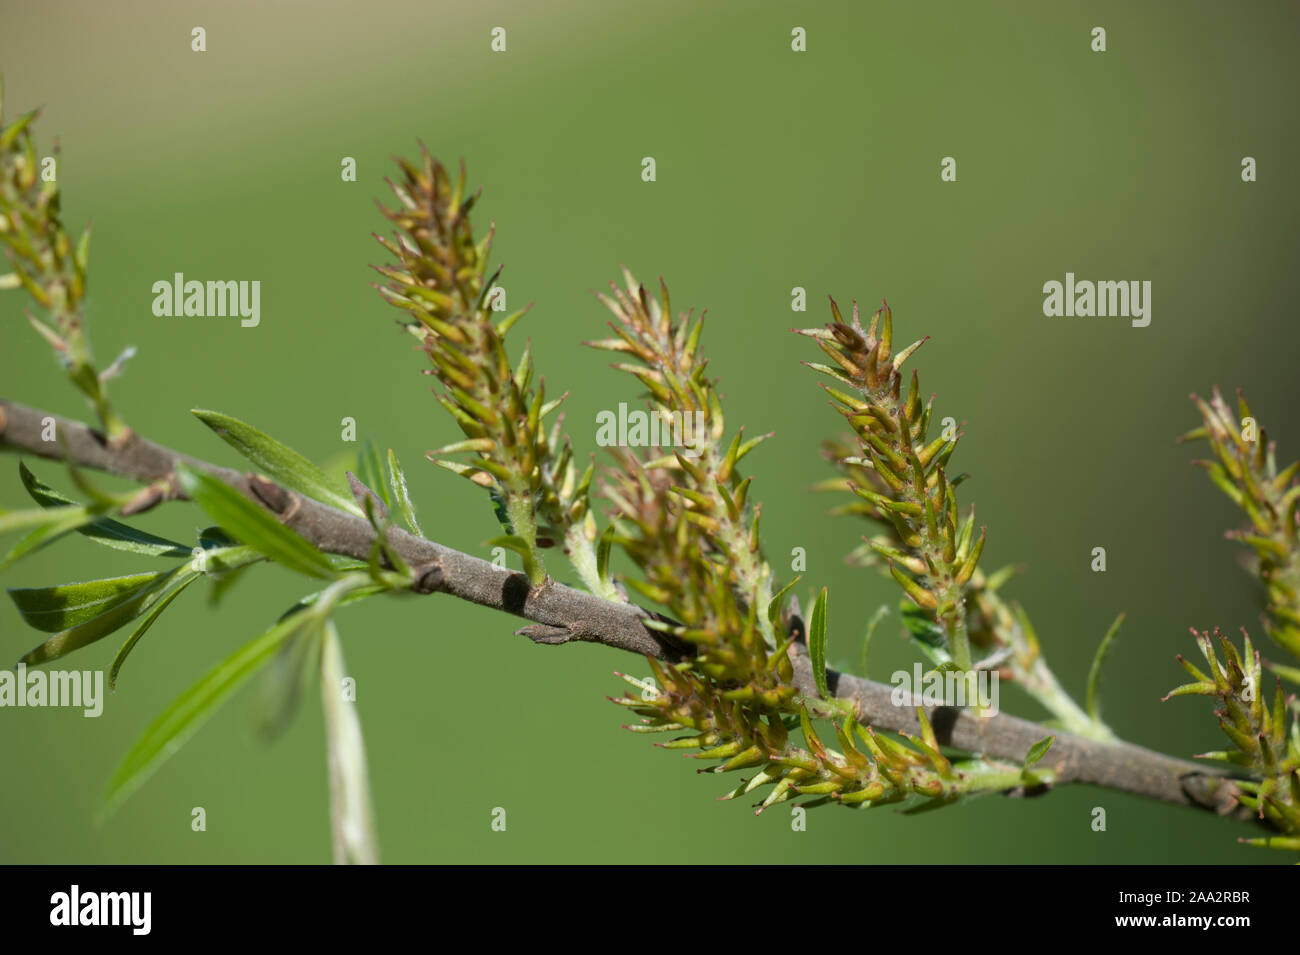 Salix eriocephala,Herzblättrige Weide,Missouri River Willow,Yellow Willow Stock Photo